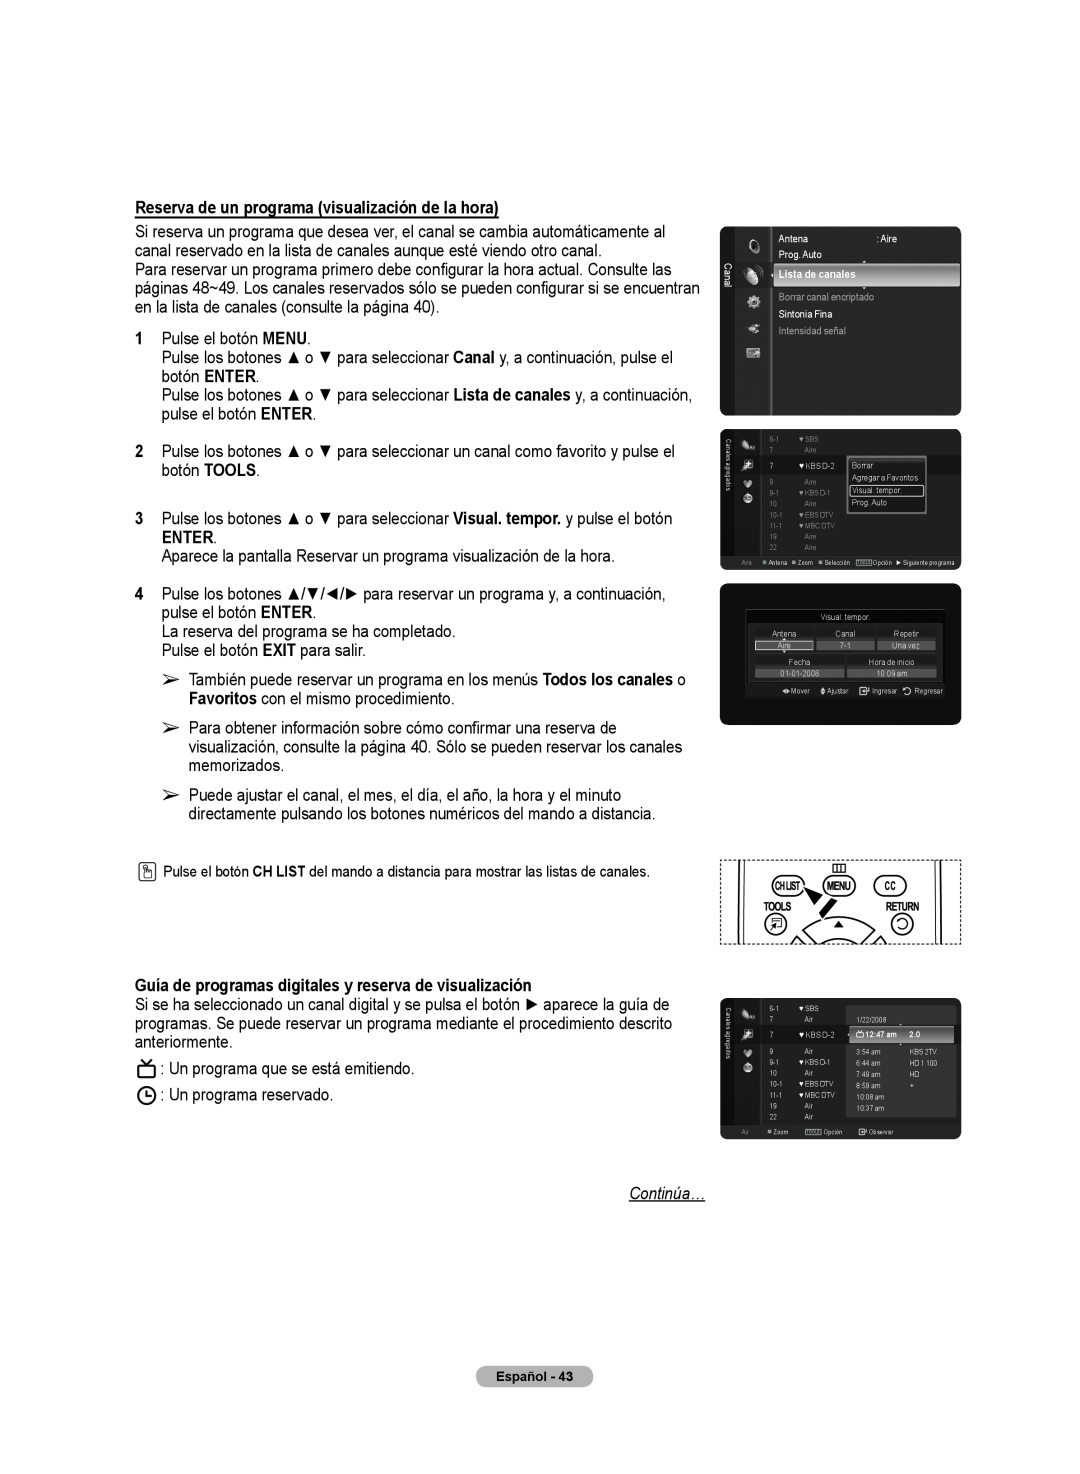 Samsung 510 Reserva de un programa visualización de la hora, Enter, Guía de programas digitales y reserva de visualización 